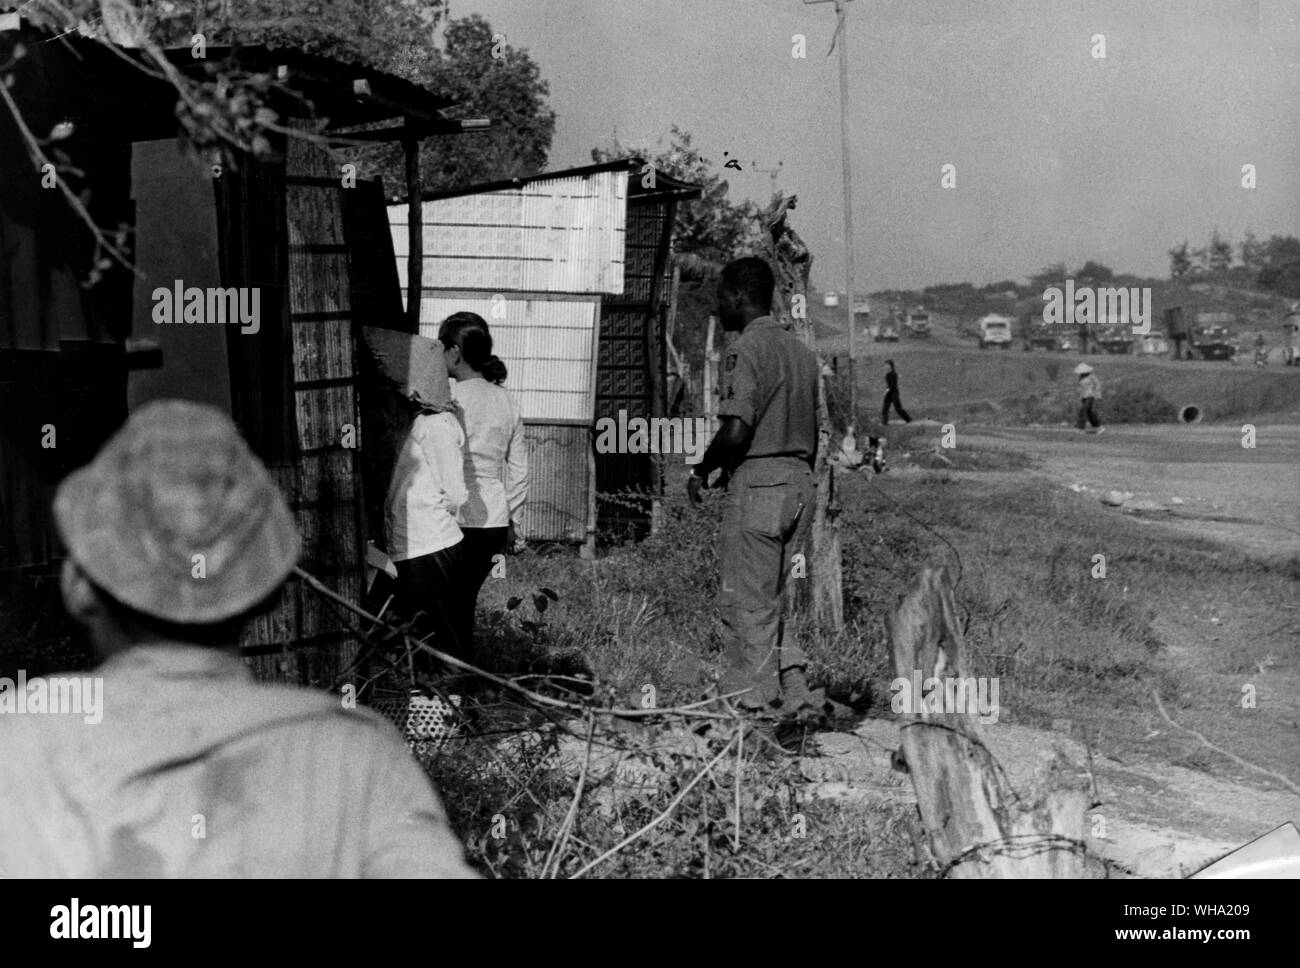 Vietnam-krieg: Soldaten und Mädchen außerhalb der einzelnen Hütten an einem Auto-waschen Lage neben einem langen militärischen Highway. Die Mädchen sind Teil einer Prostitution Schläger. Stockfoto